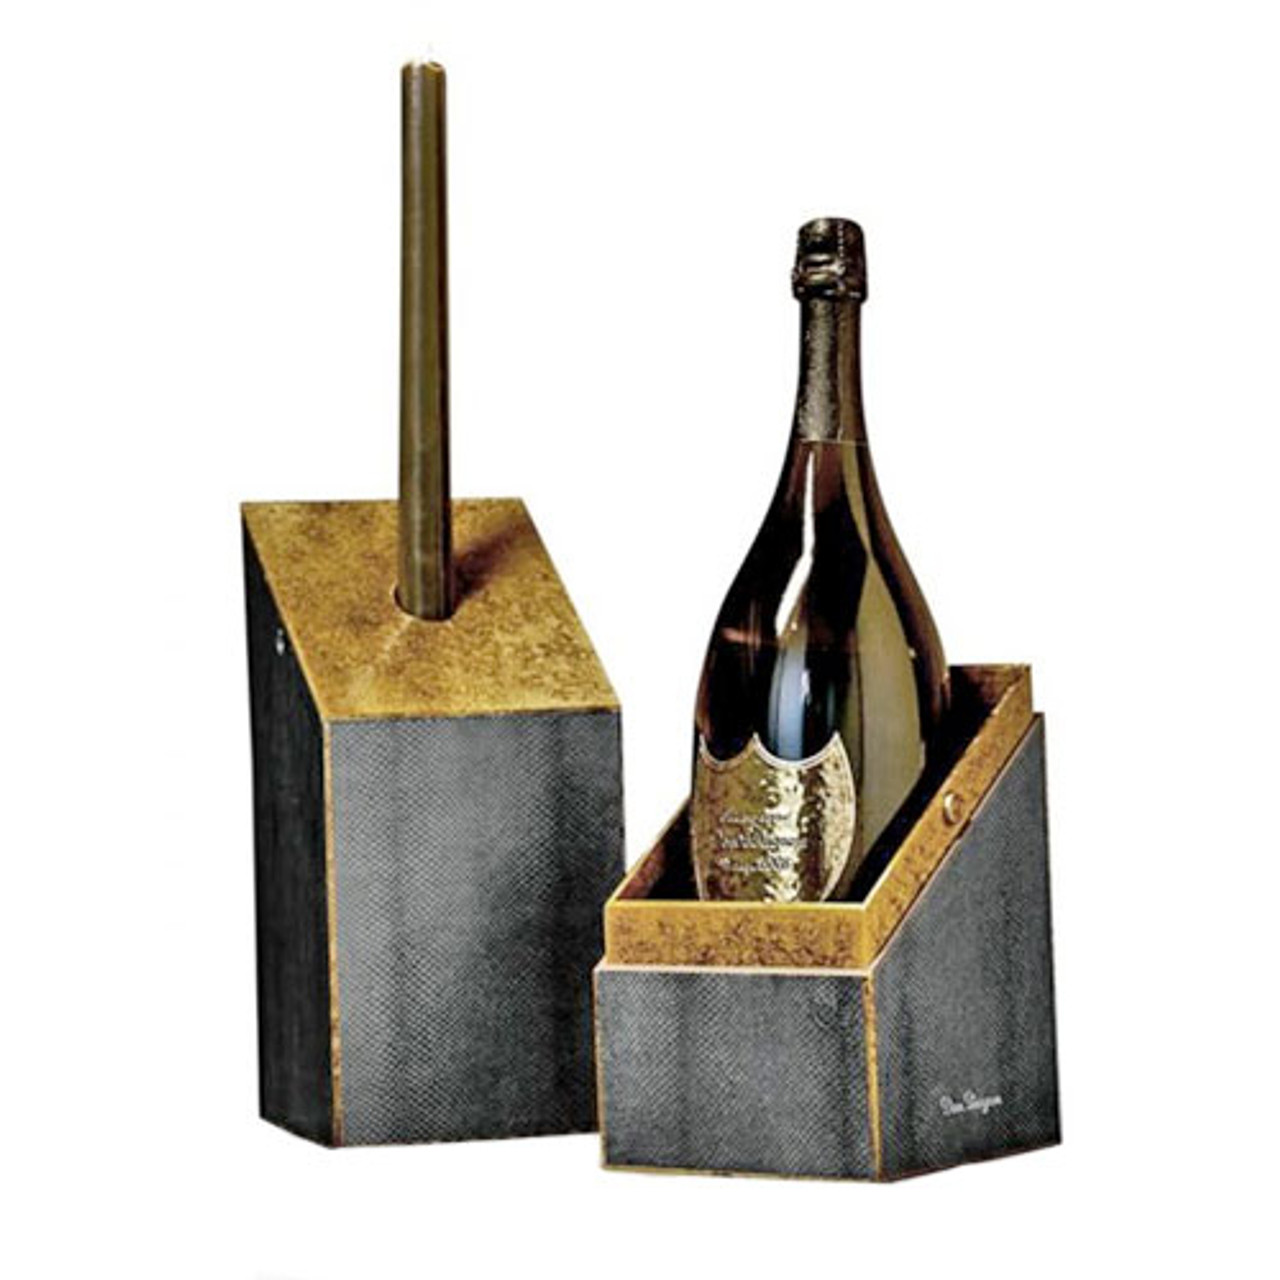 BUY] Dom Perignon Brut Champagne, LIMITED EDITION